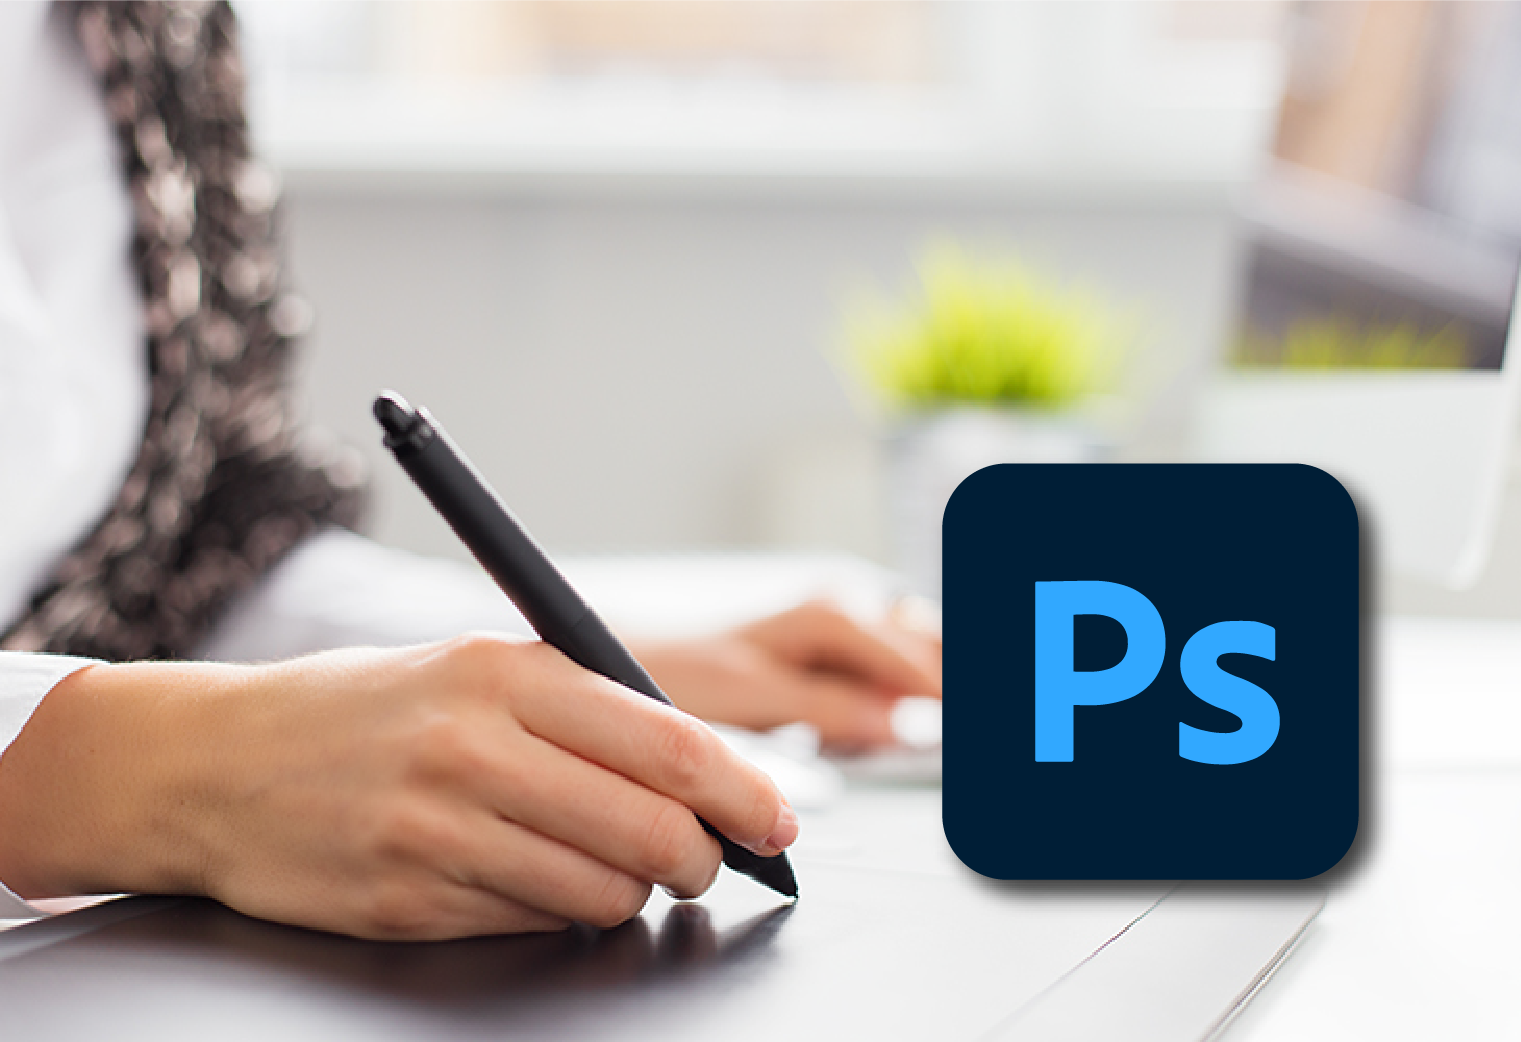 Adobe Photoshop – PS Training